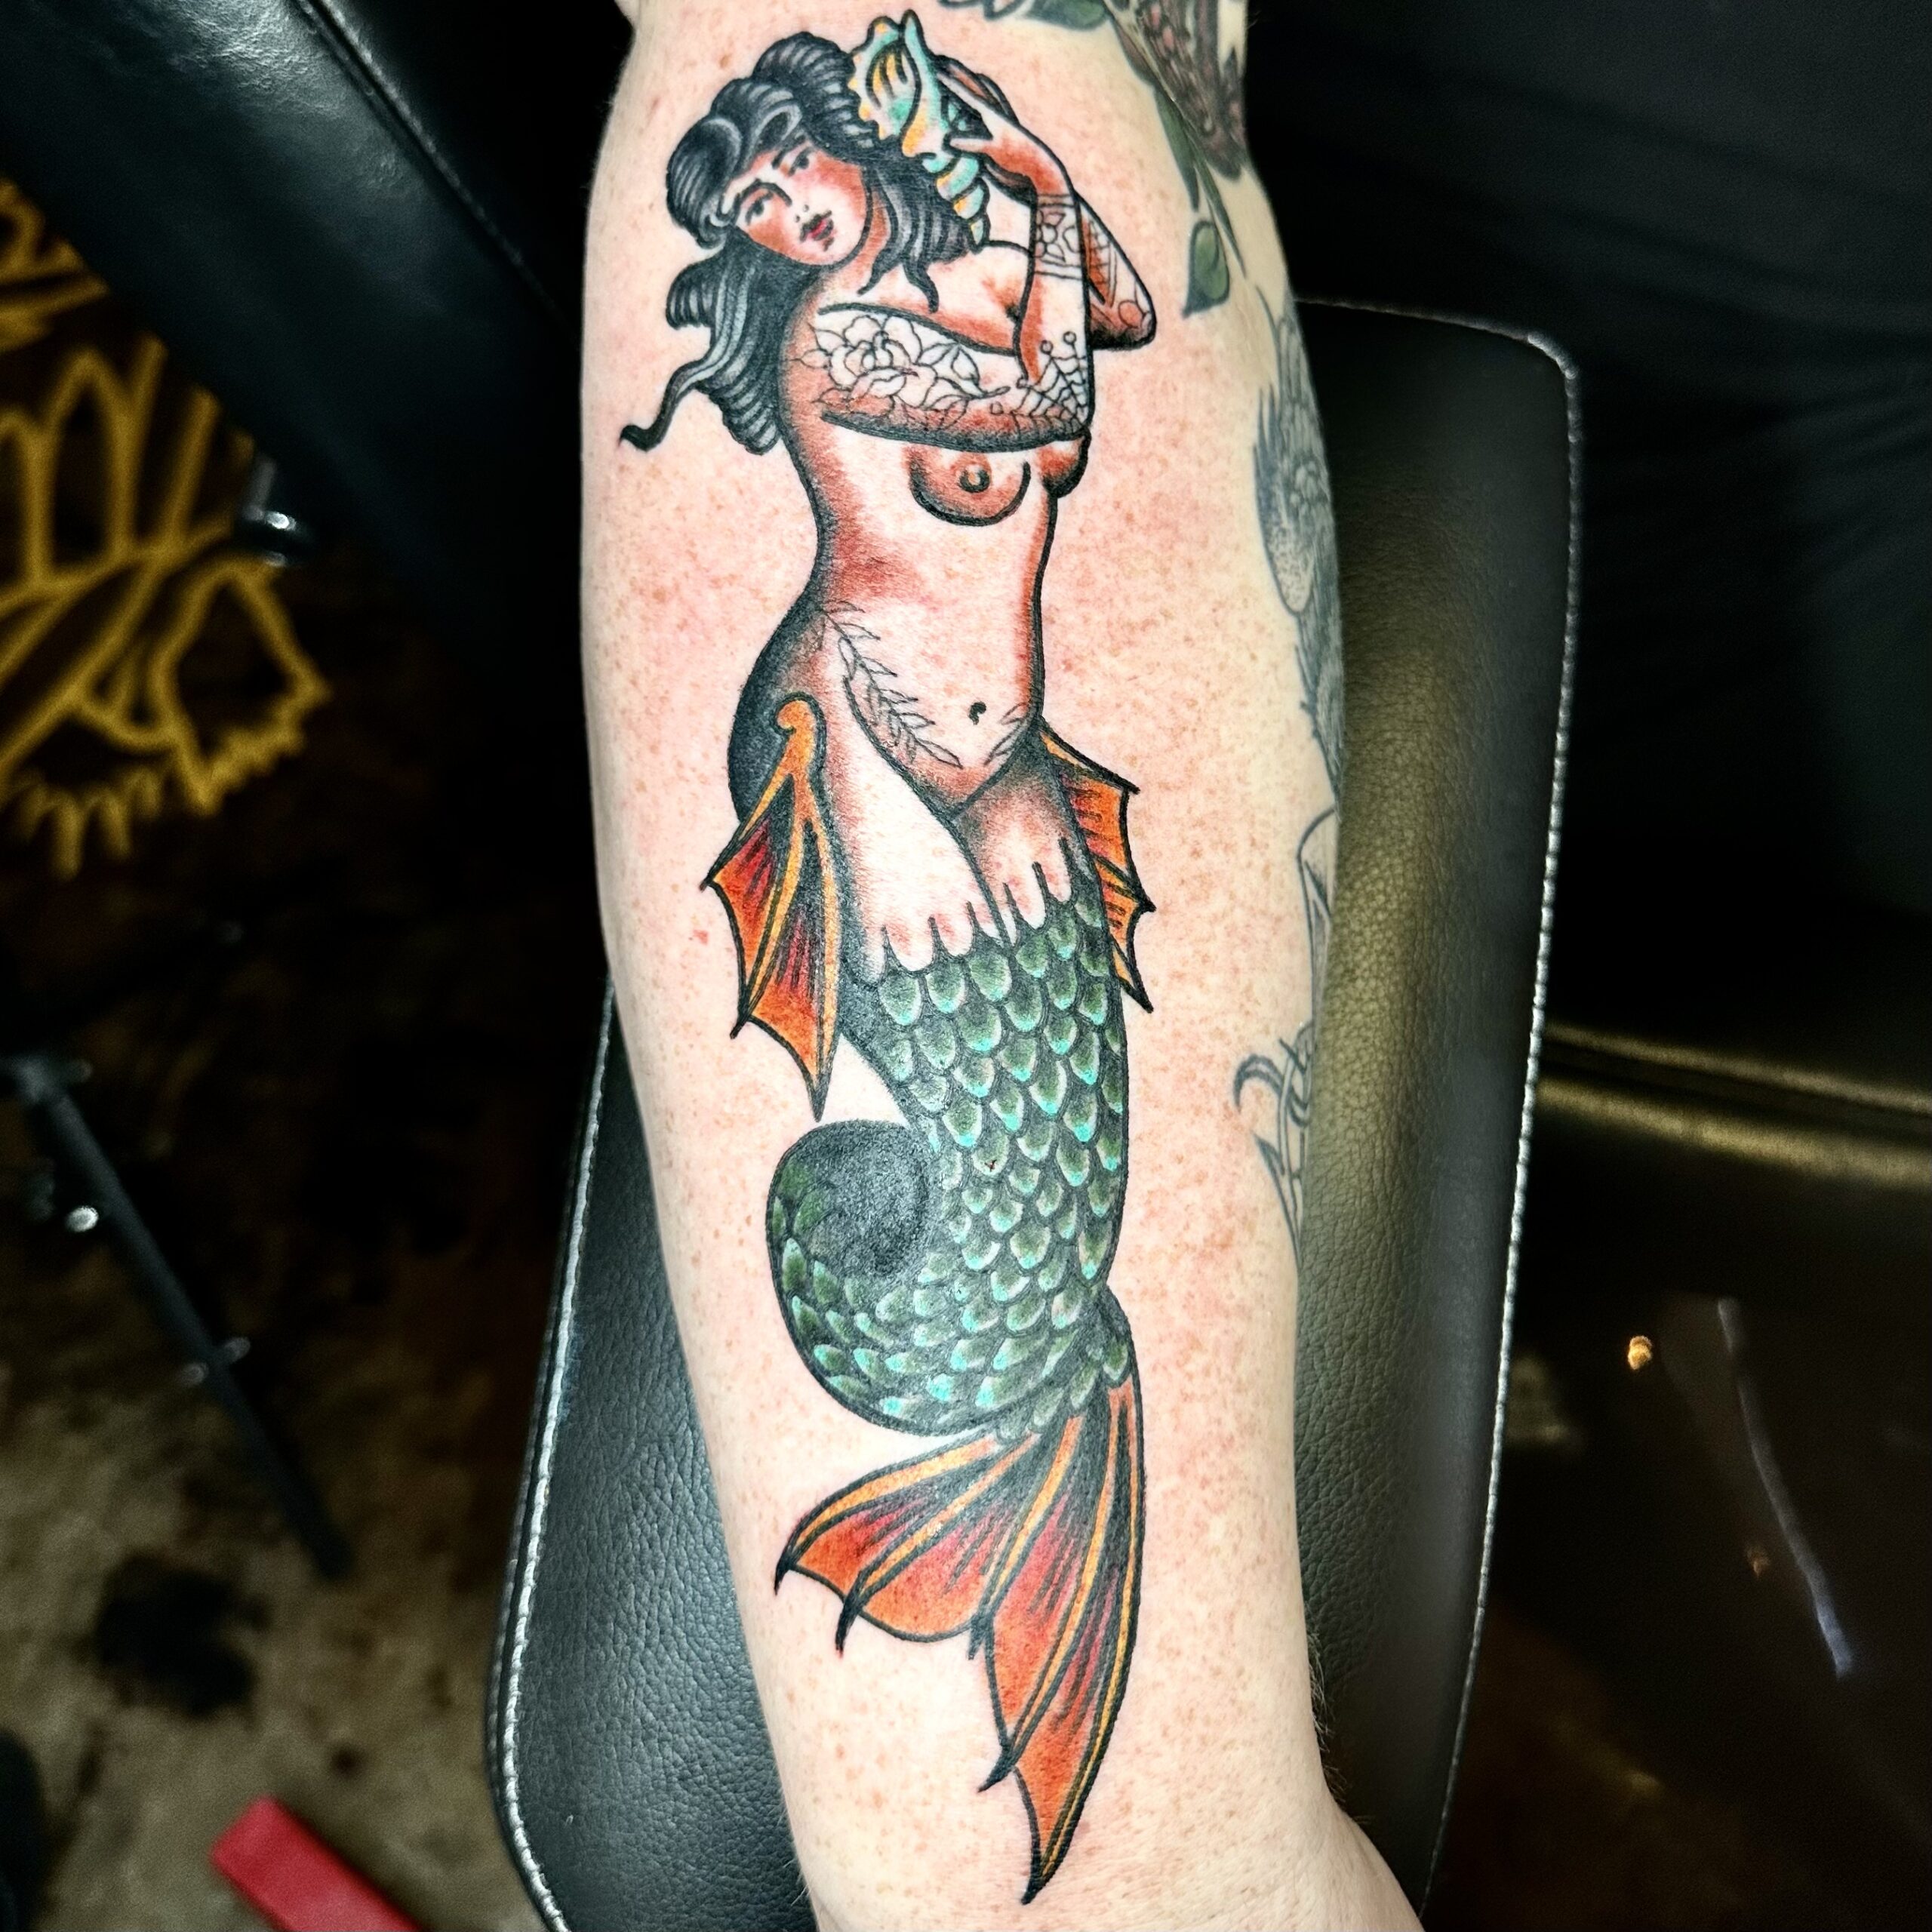 Tattoo of a mermaid from top tattoo artist in Dallas